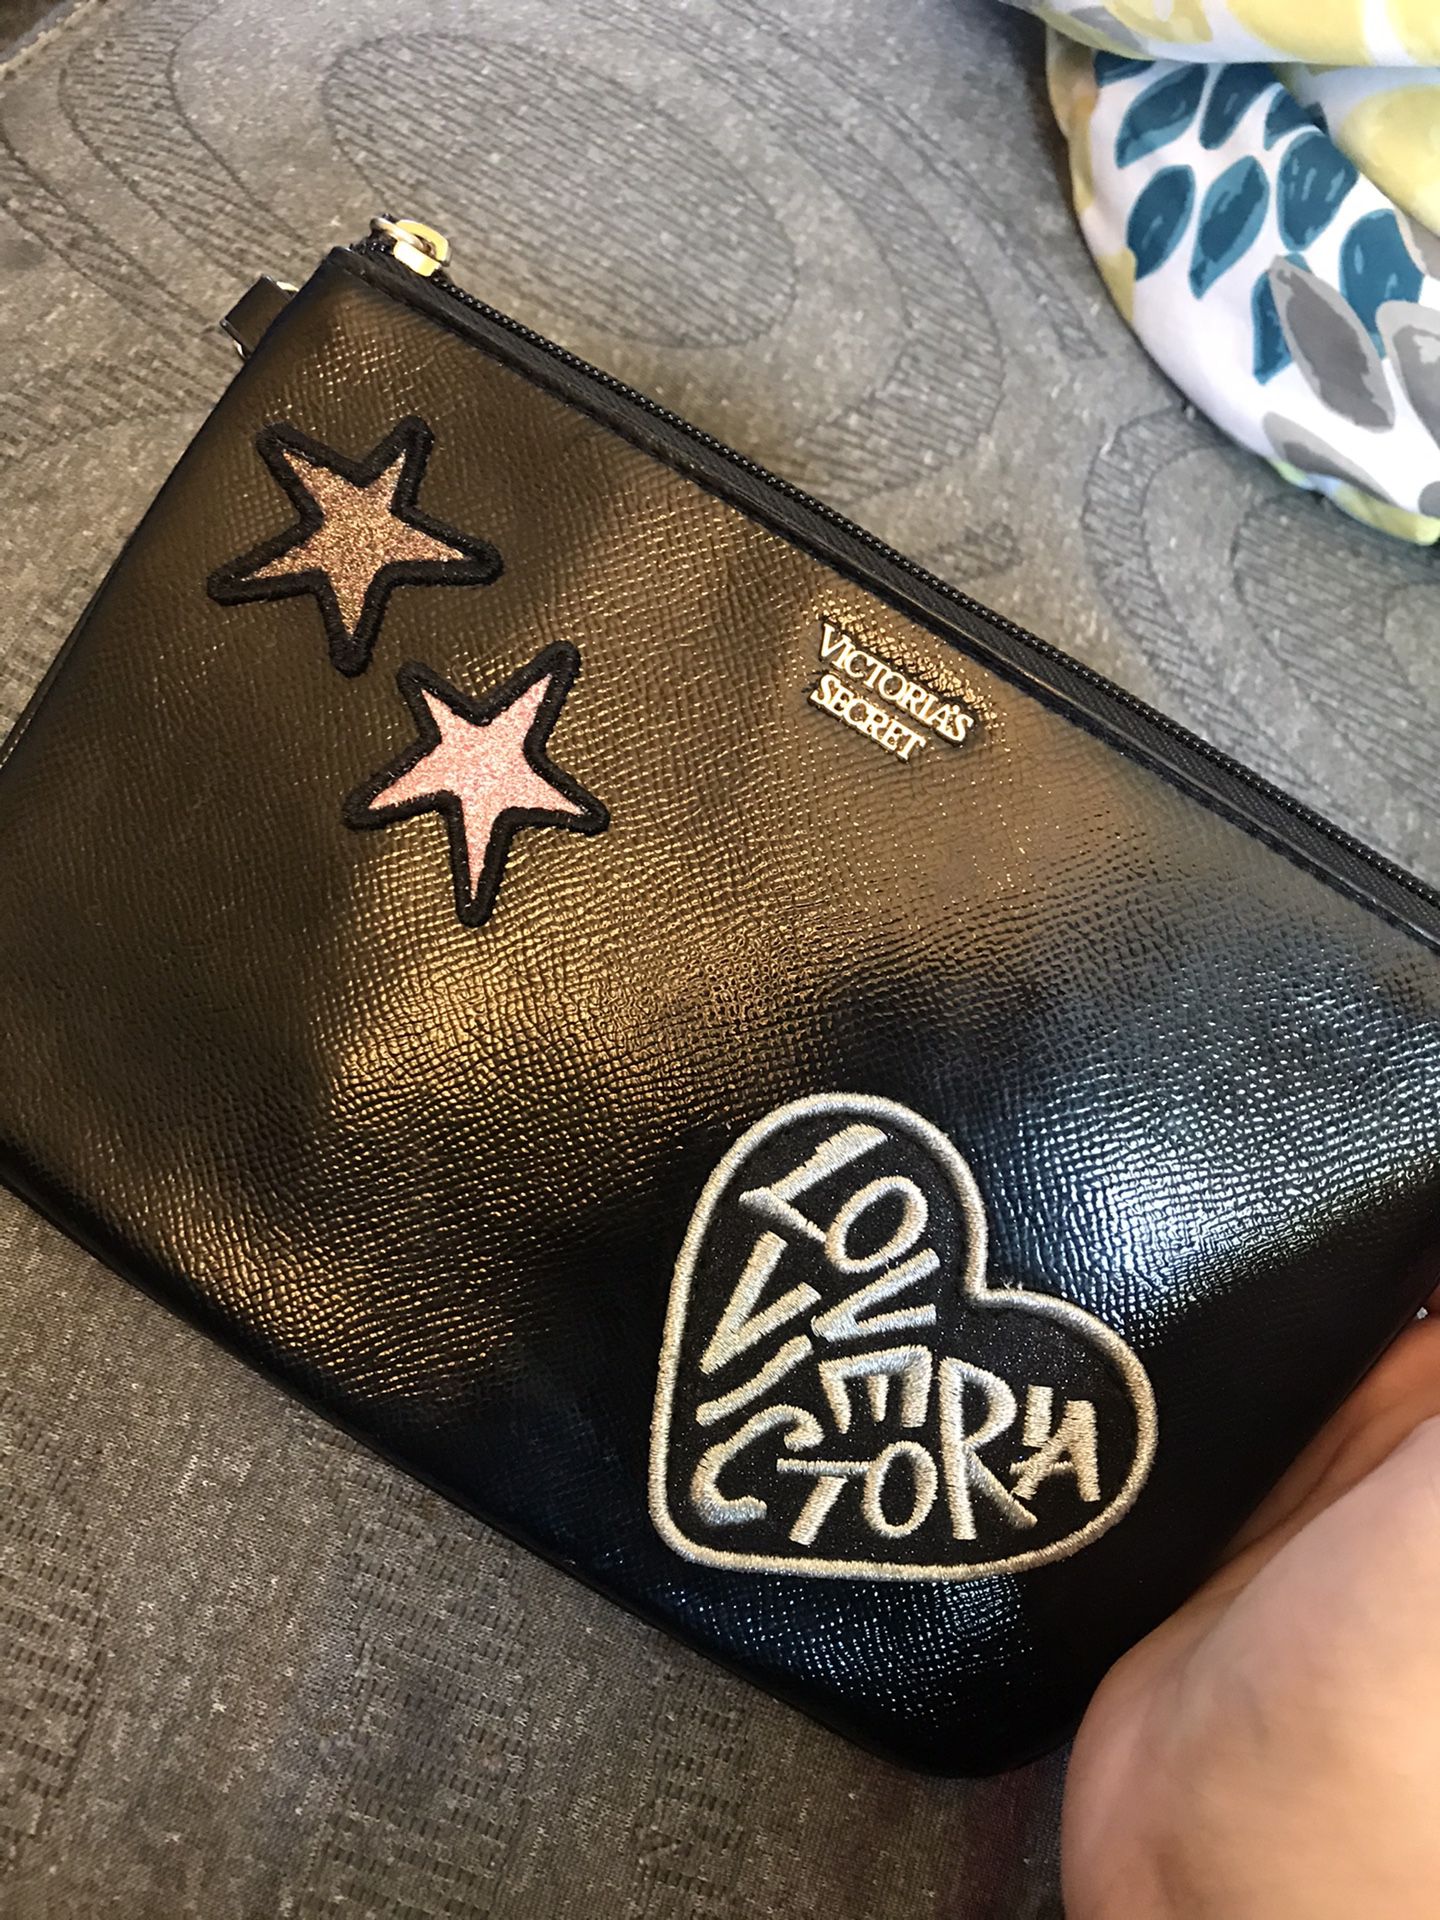 Victoria’s Secret bag